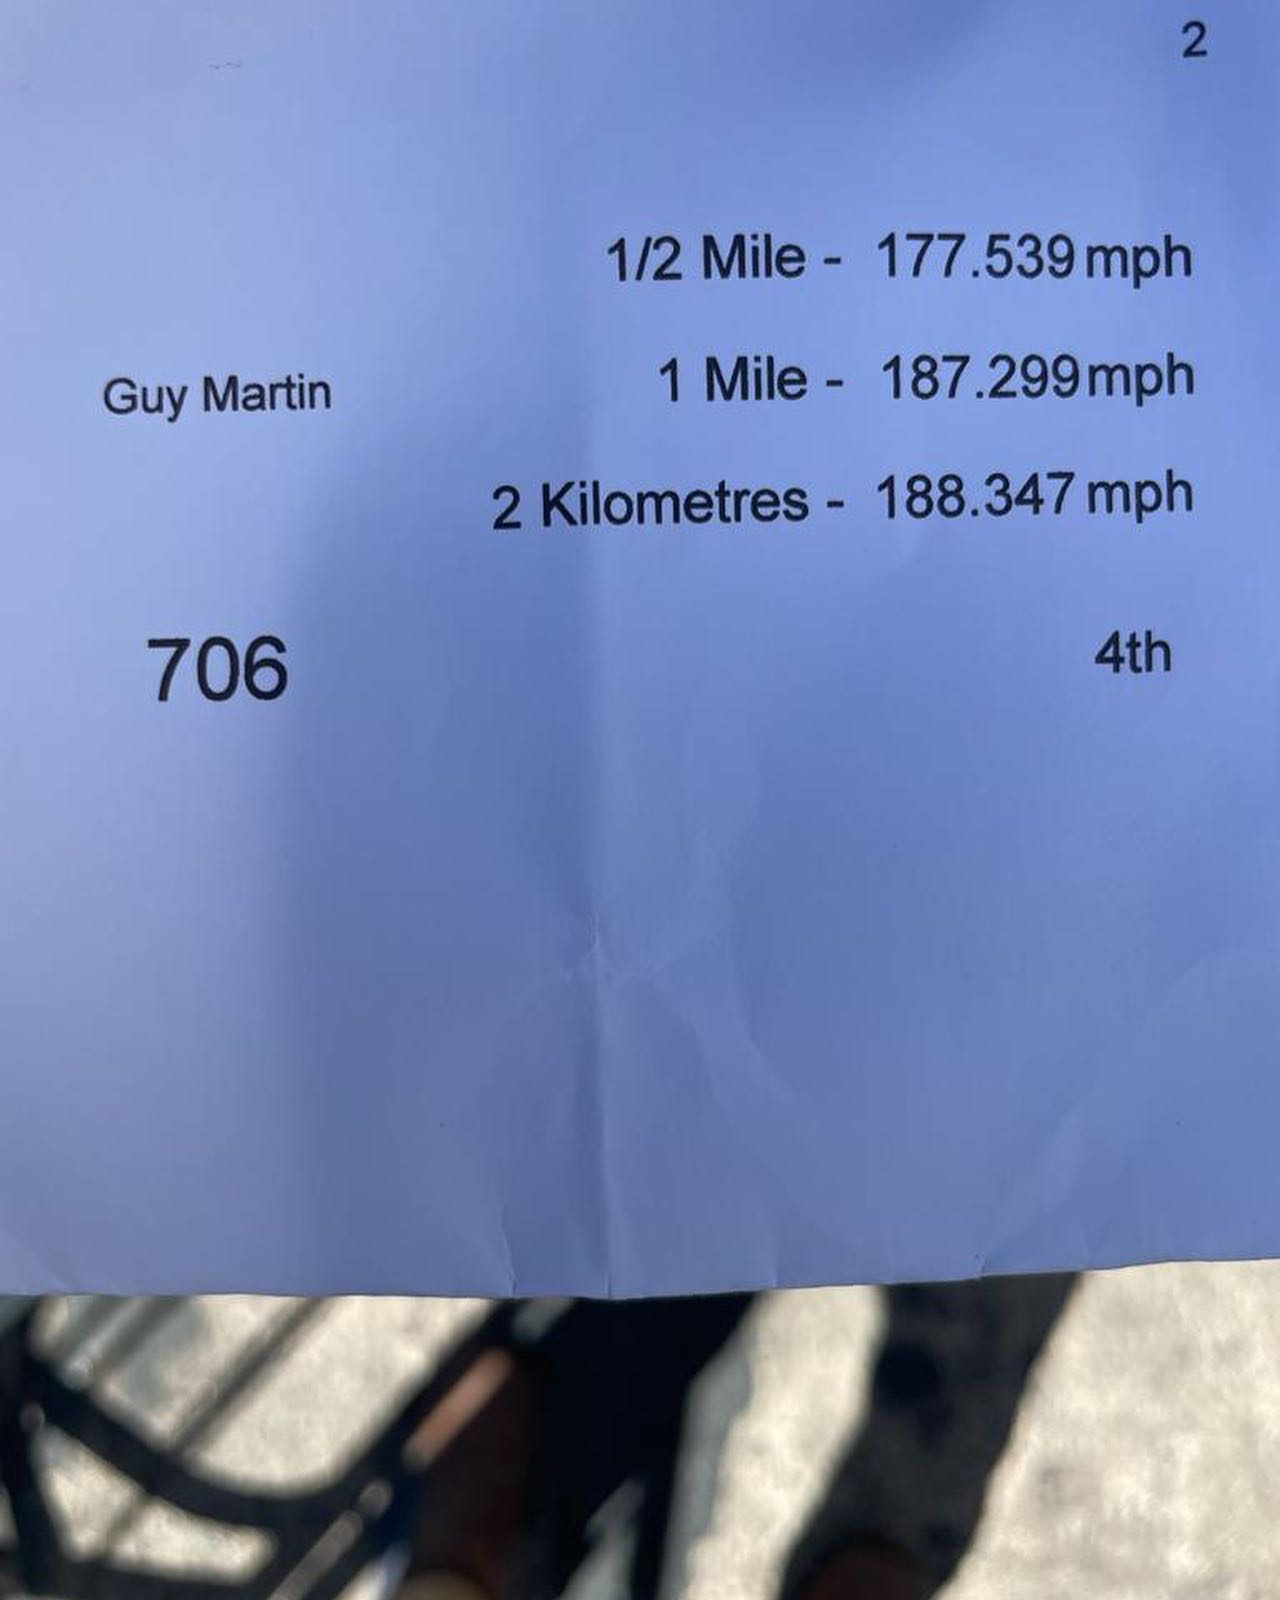 盖伊·马丁试图用克里顿700w跑车打破每小时200英里的速度记录。媒体来源盖伊·马丁的Facebook页面。